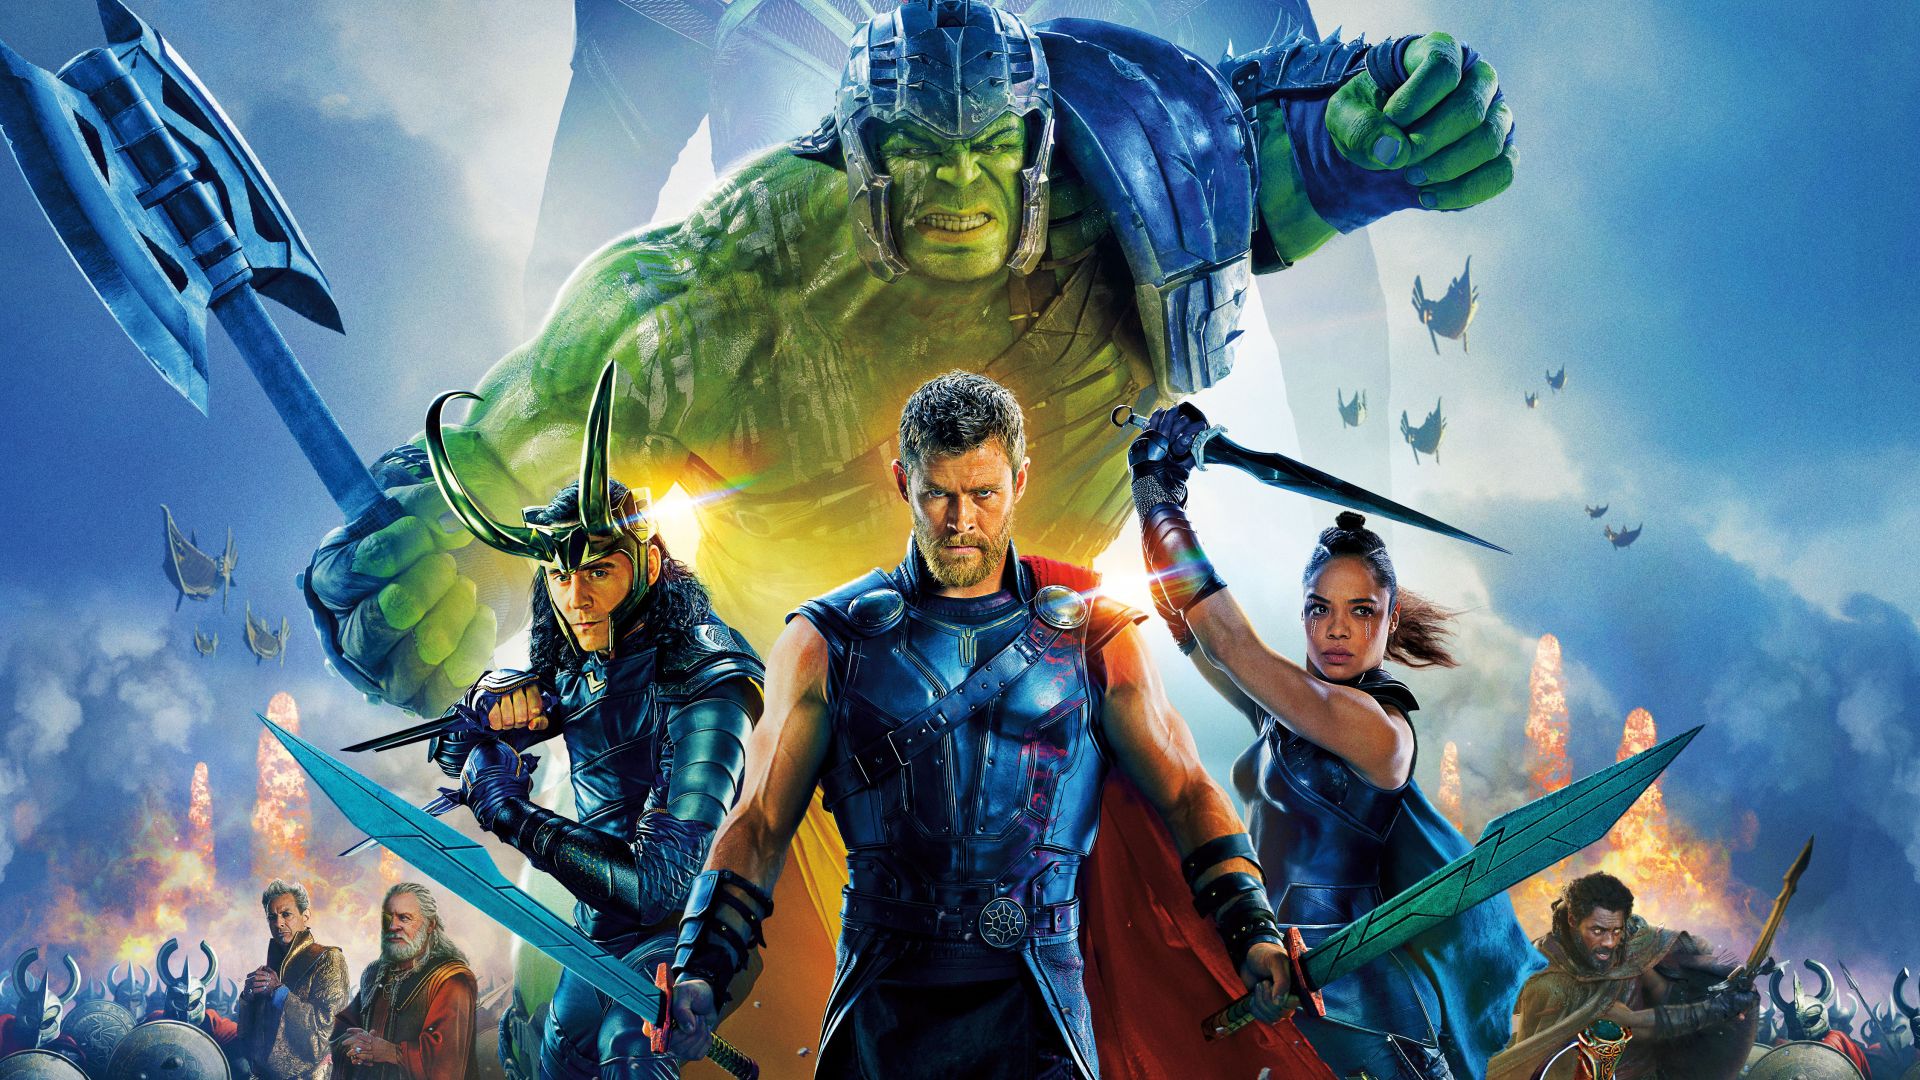 Wallpaper Thor: ragnarok, movie, poster, cast, 4k, 2017